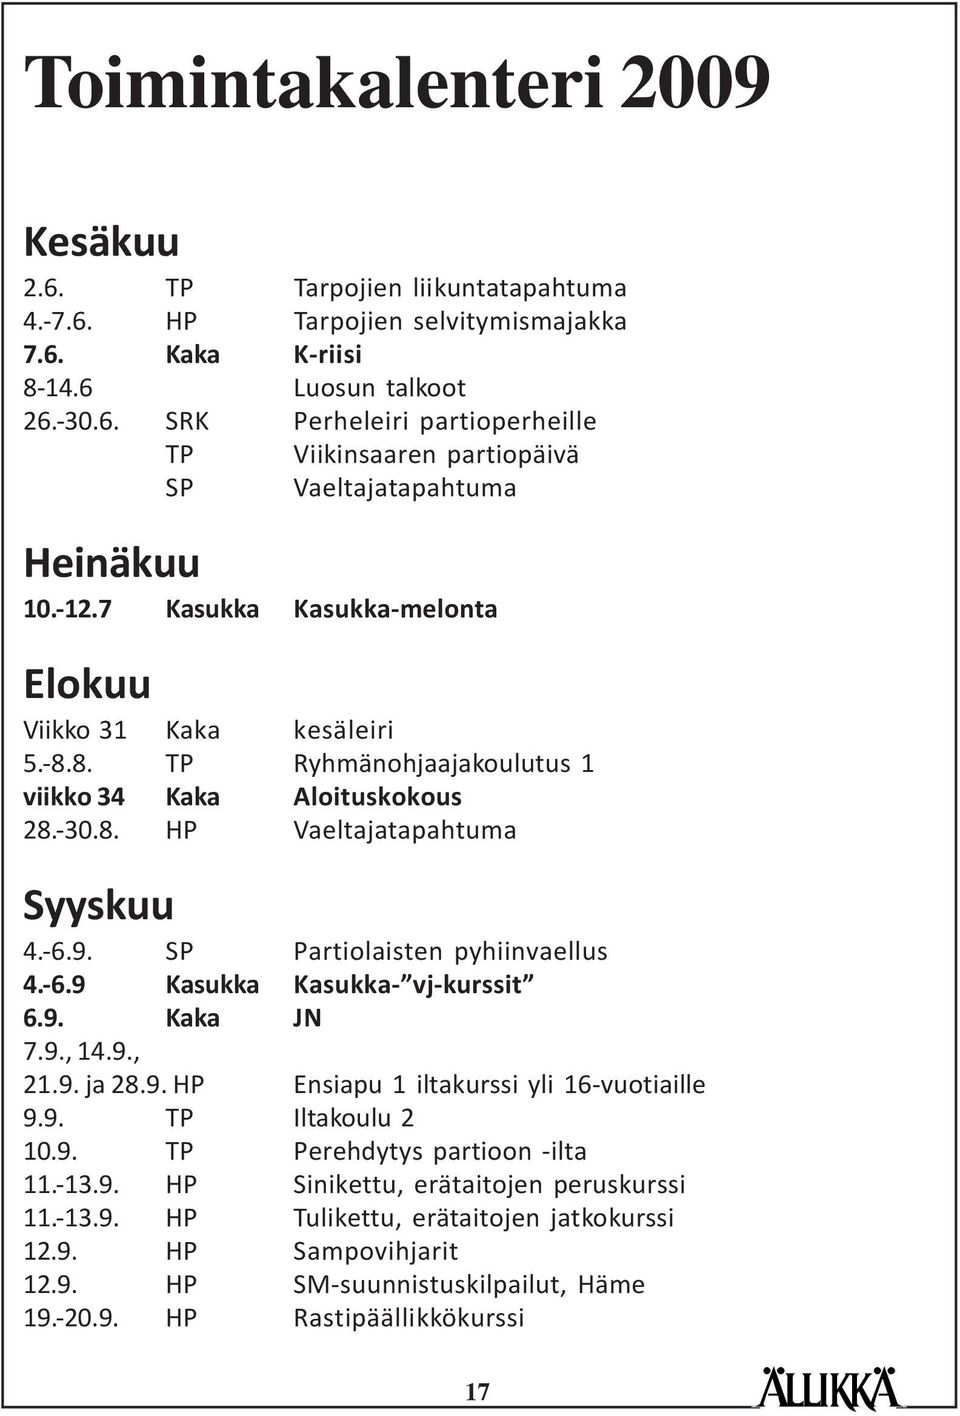 SP Partiolaisten pyhiinvaellus 4.-6.9 Kasukka Kasukka- vj-kurssit 6.9. Kaka JN 7.9., 14.9., 21.9. ja 28.9. HP Ensiapu 1 iltakurssi yli 16-vuotiaille 9.9. TP Iltakoulu 2 10.9. TP Perehdytys partioon -ilta 11.